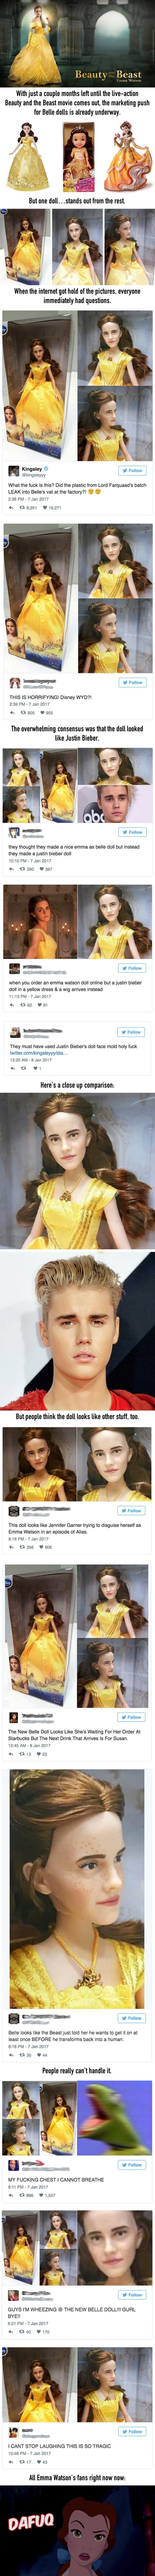 Beauty and The Beast doll looks like Bieber